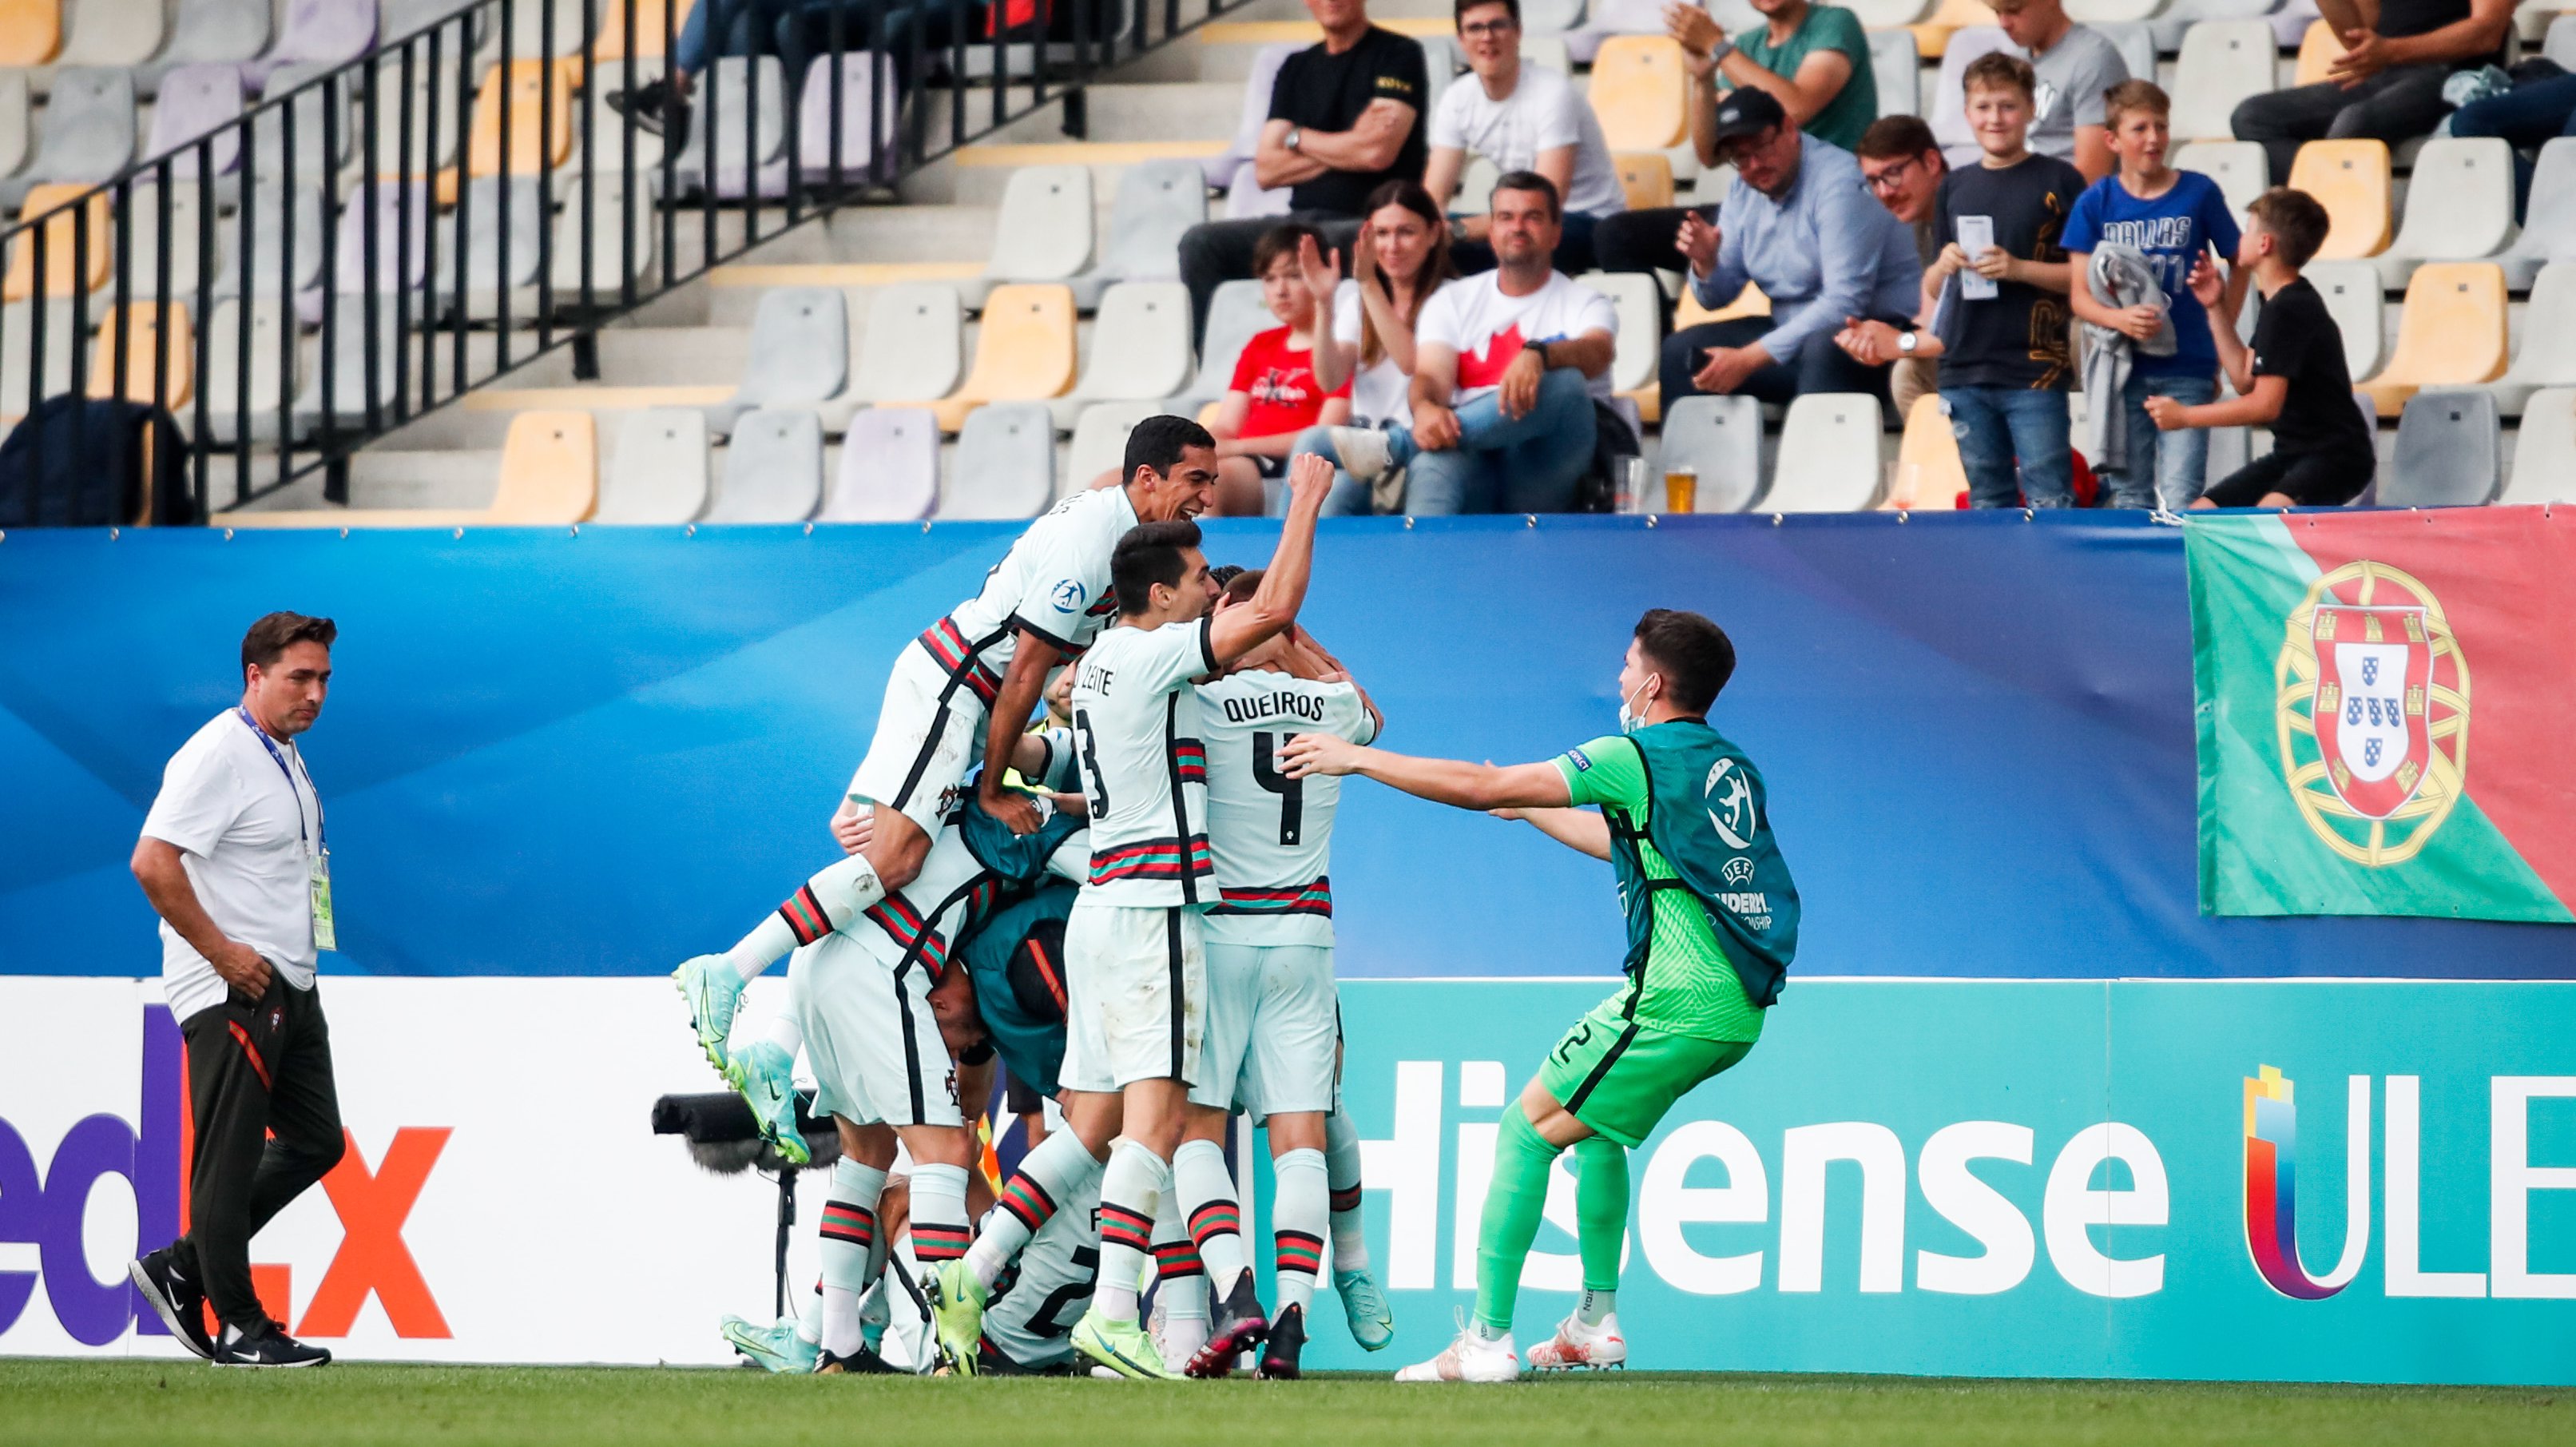 Portugal conseguiu chegar de novo à final do Europeu Sub-21 com Rui Jorge, depois da derrota em 2015 frente à Suécia